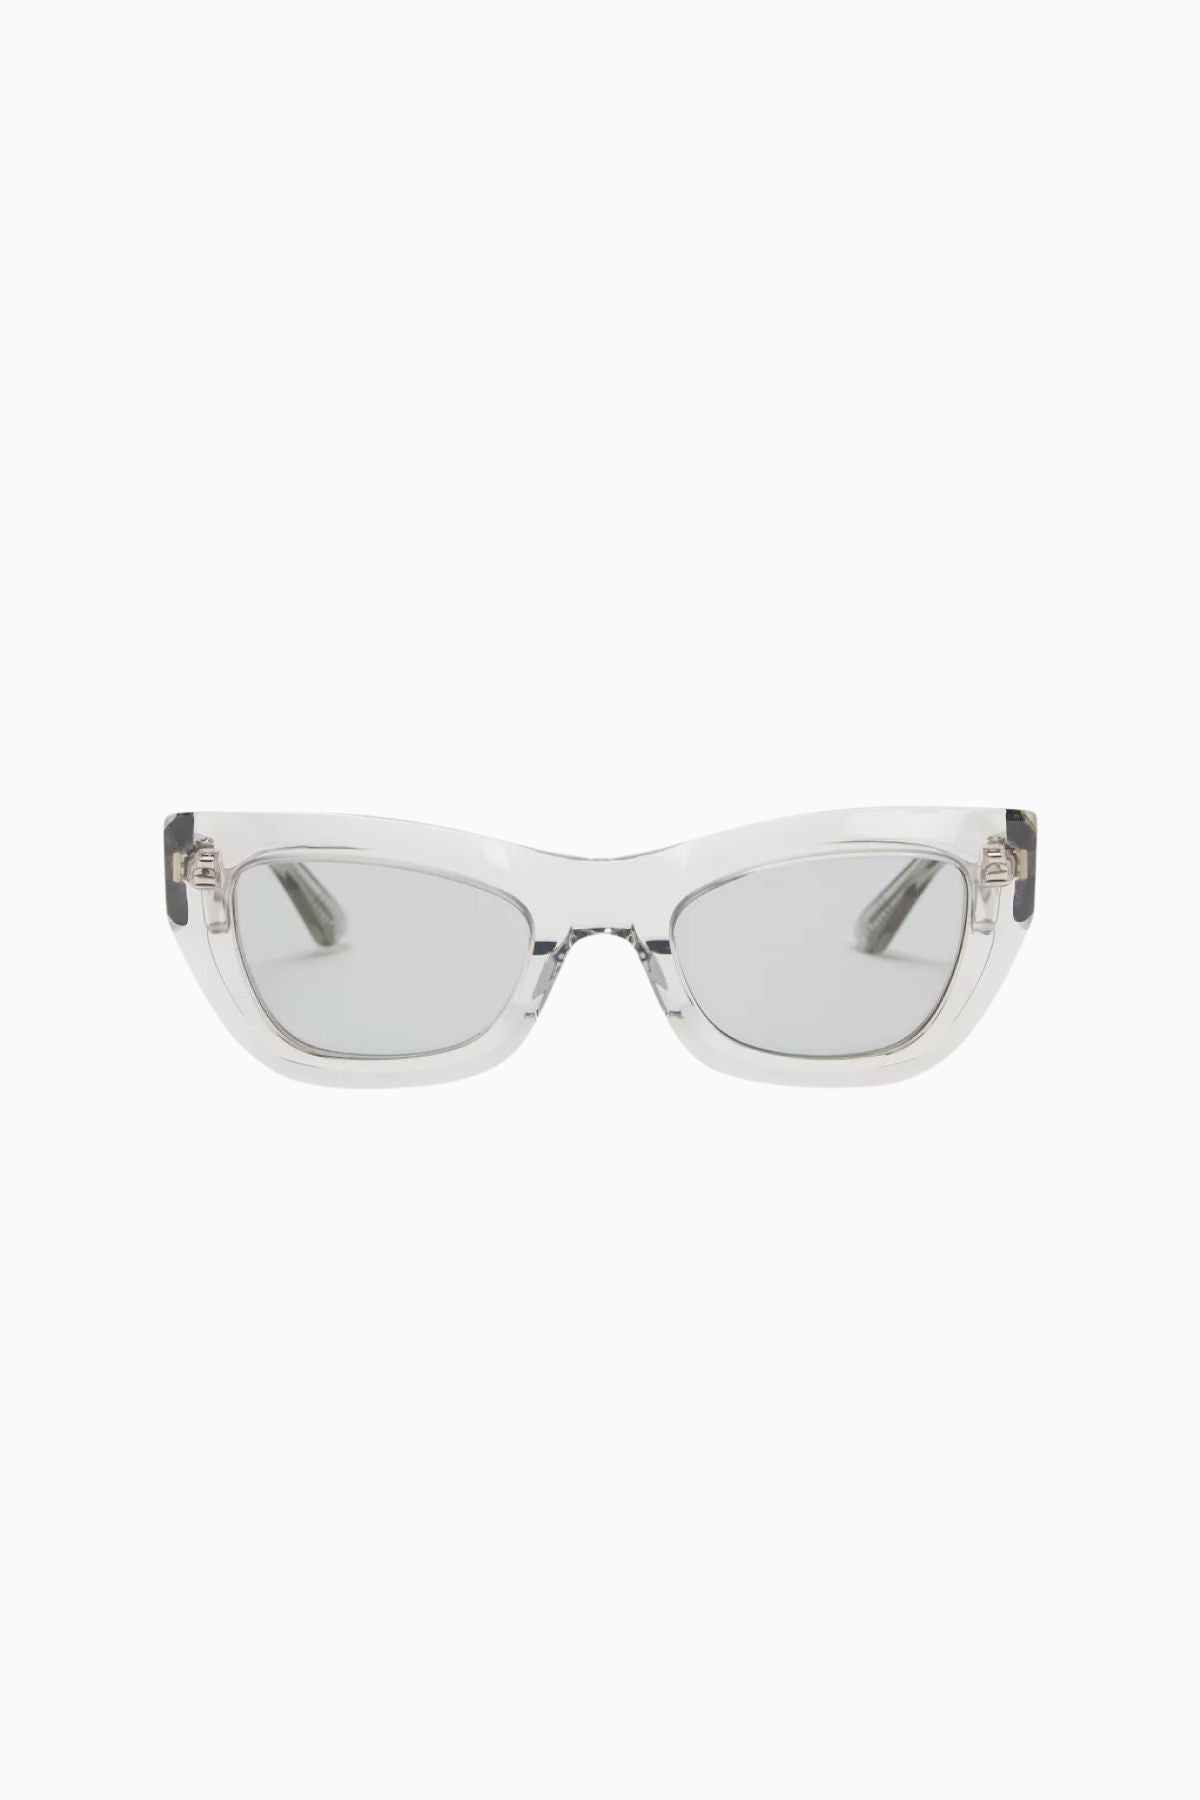 Bottega Veneta Cat Eye Sunglasses - Grey